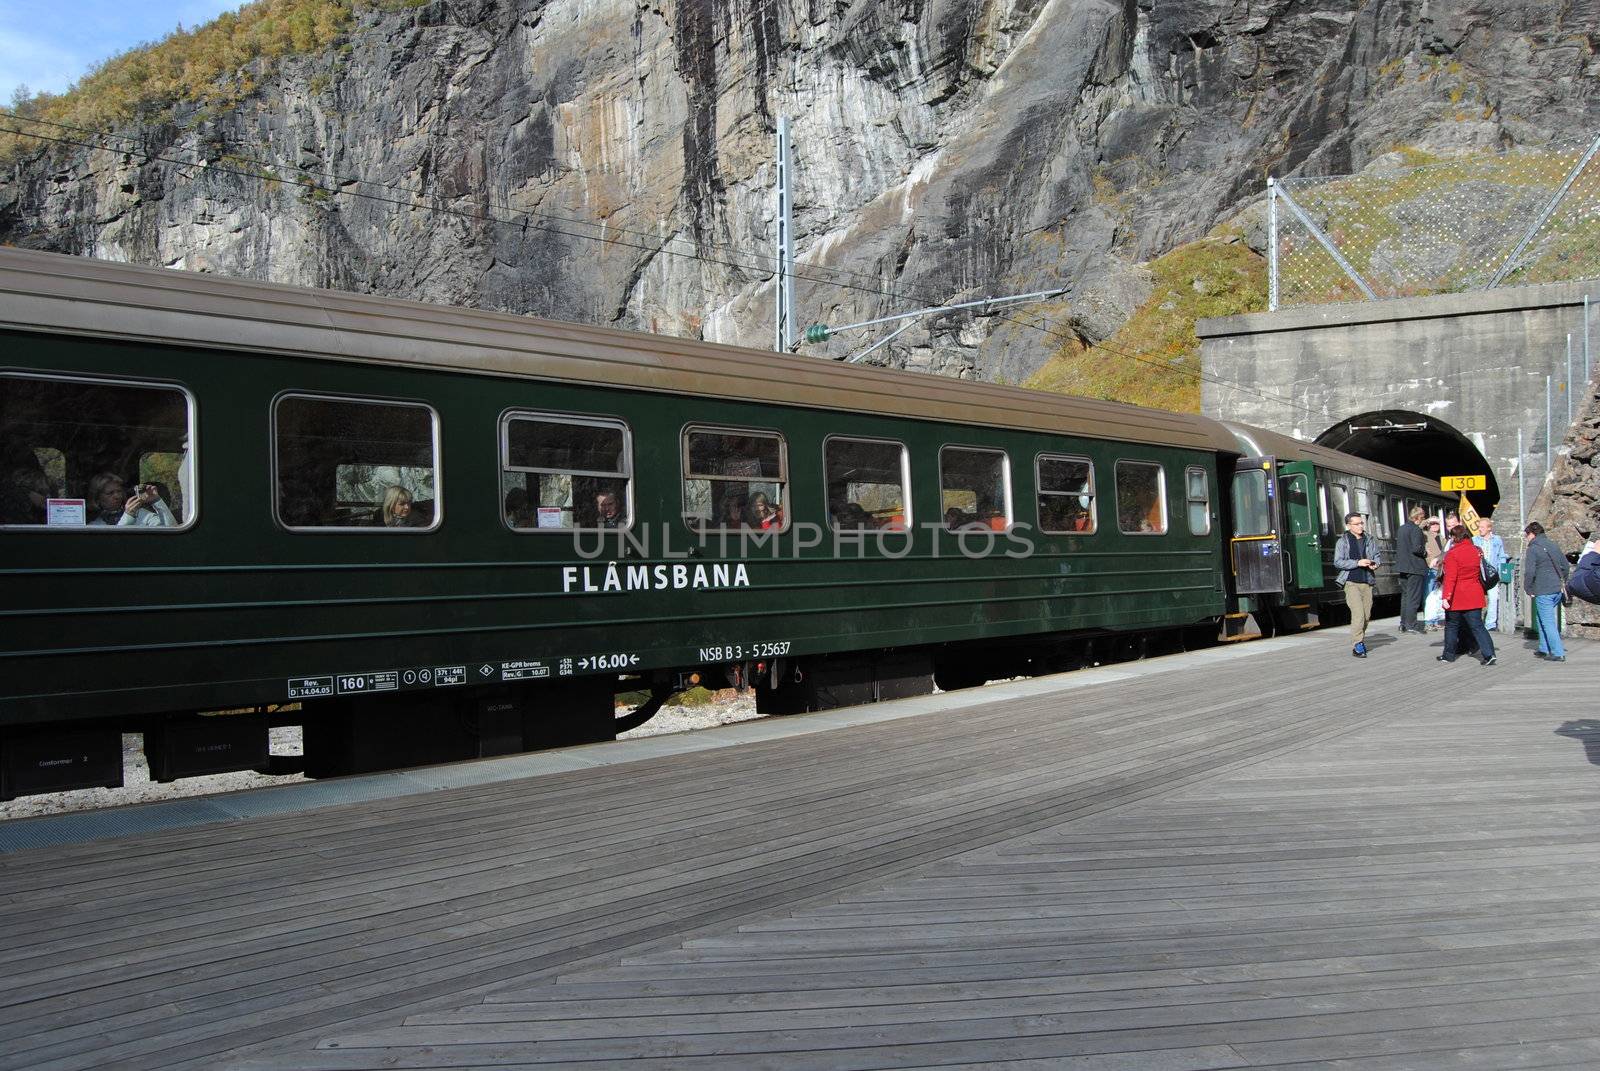 Flåmsbanen tourist train in western Norway